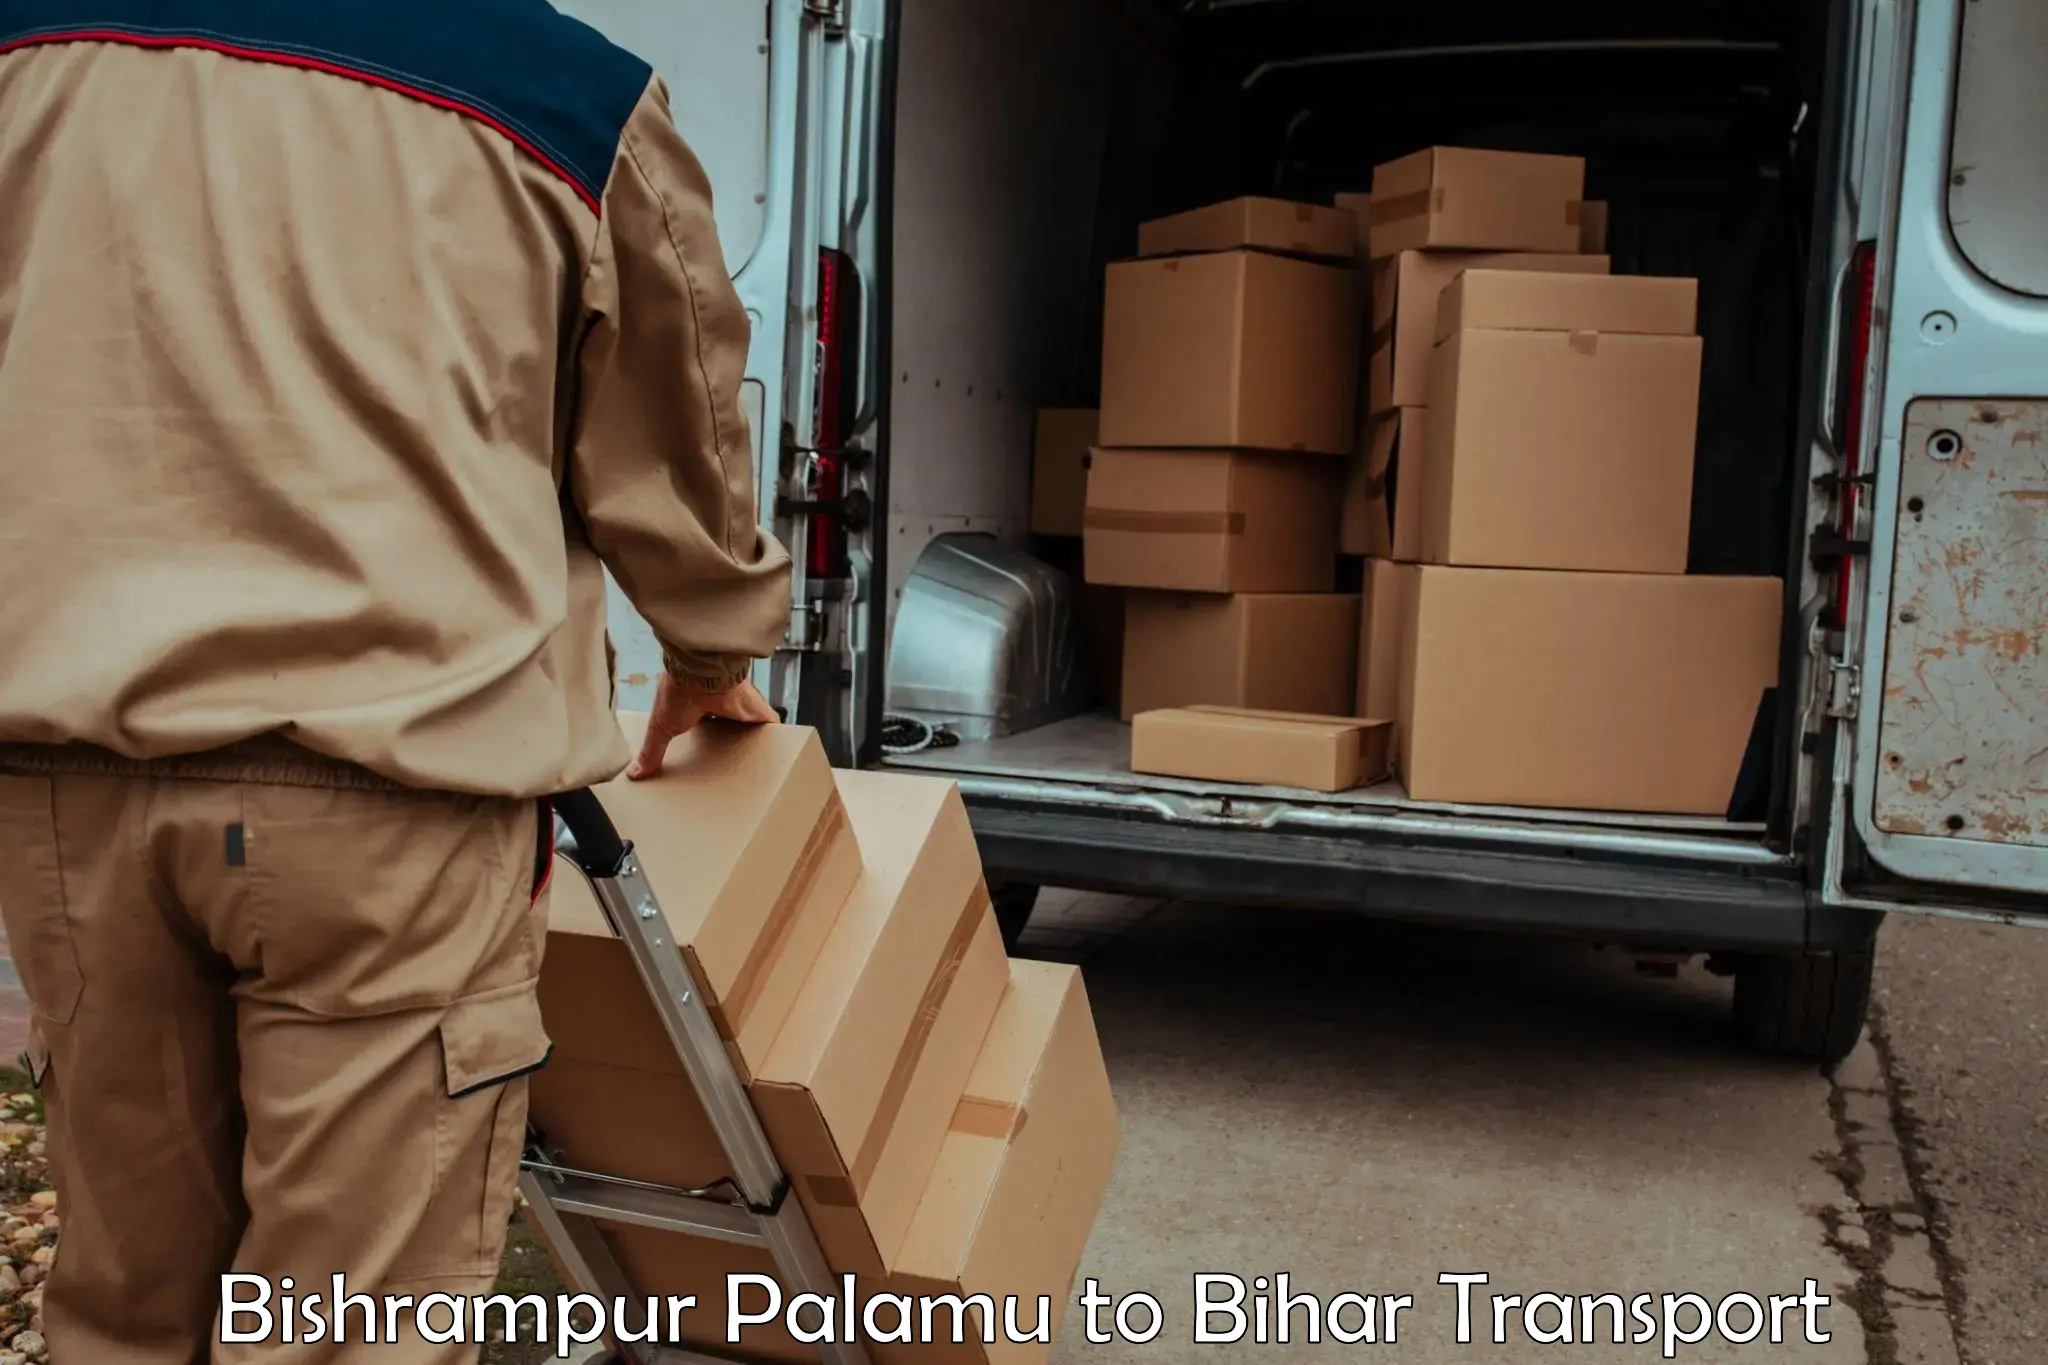 Cargo transport services in Bishrampur Palamu to Malyabag